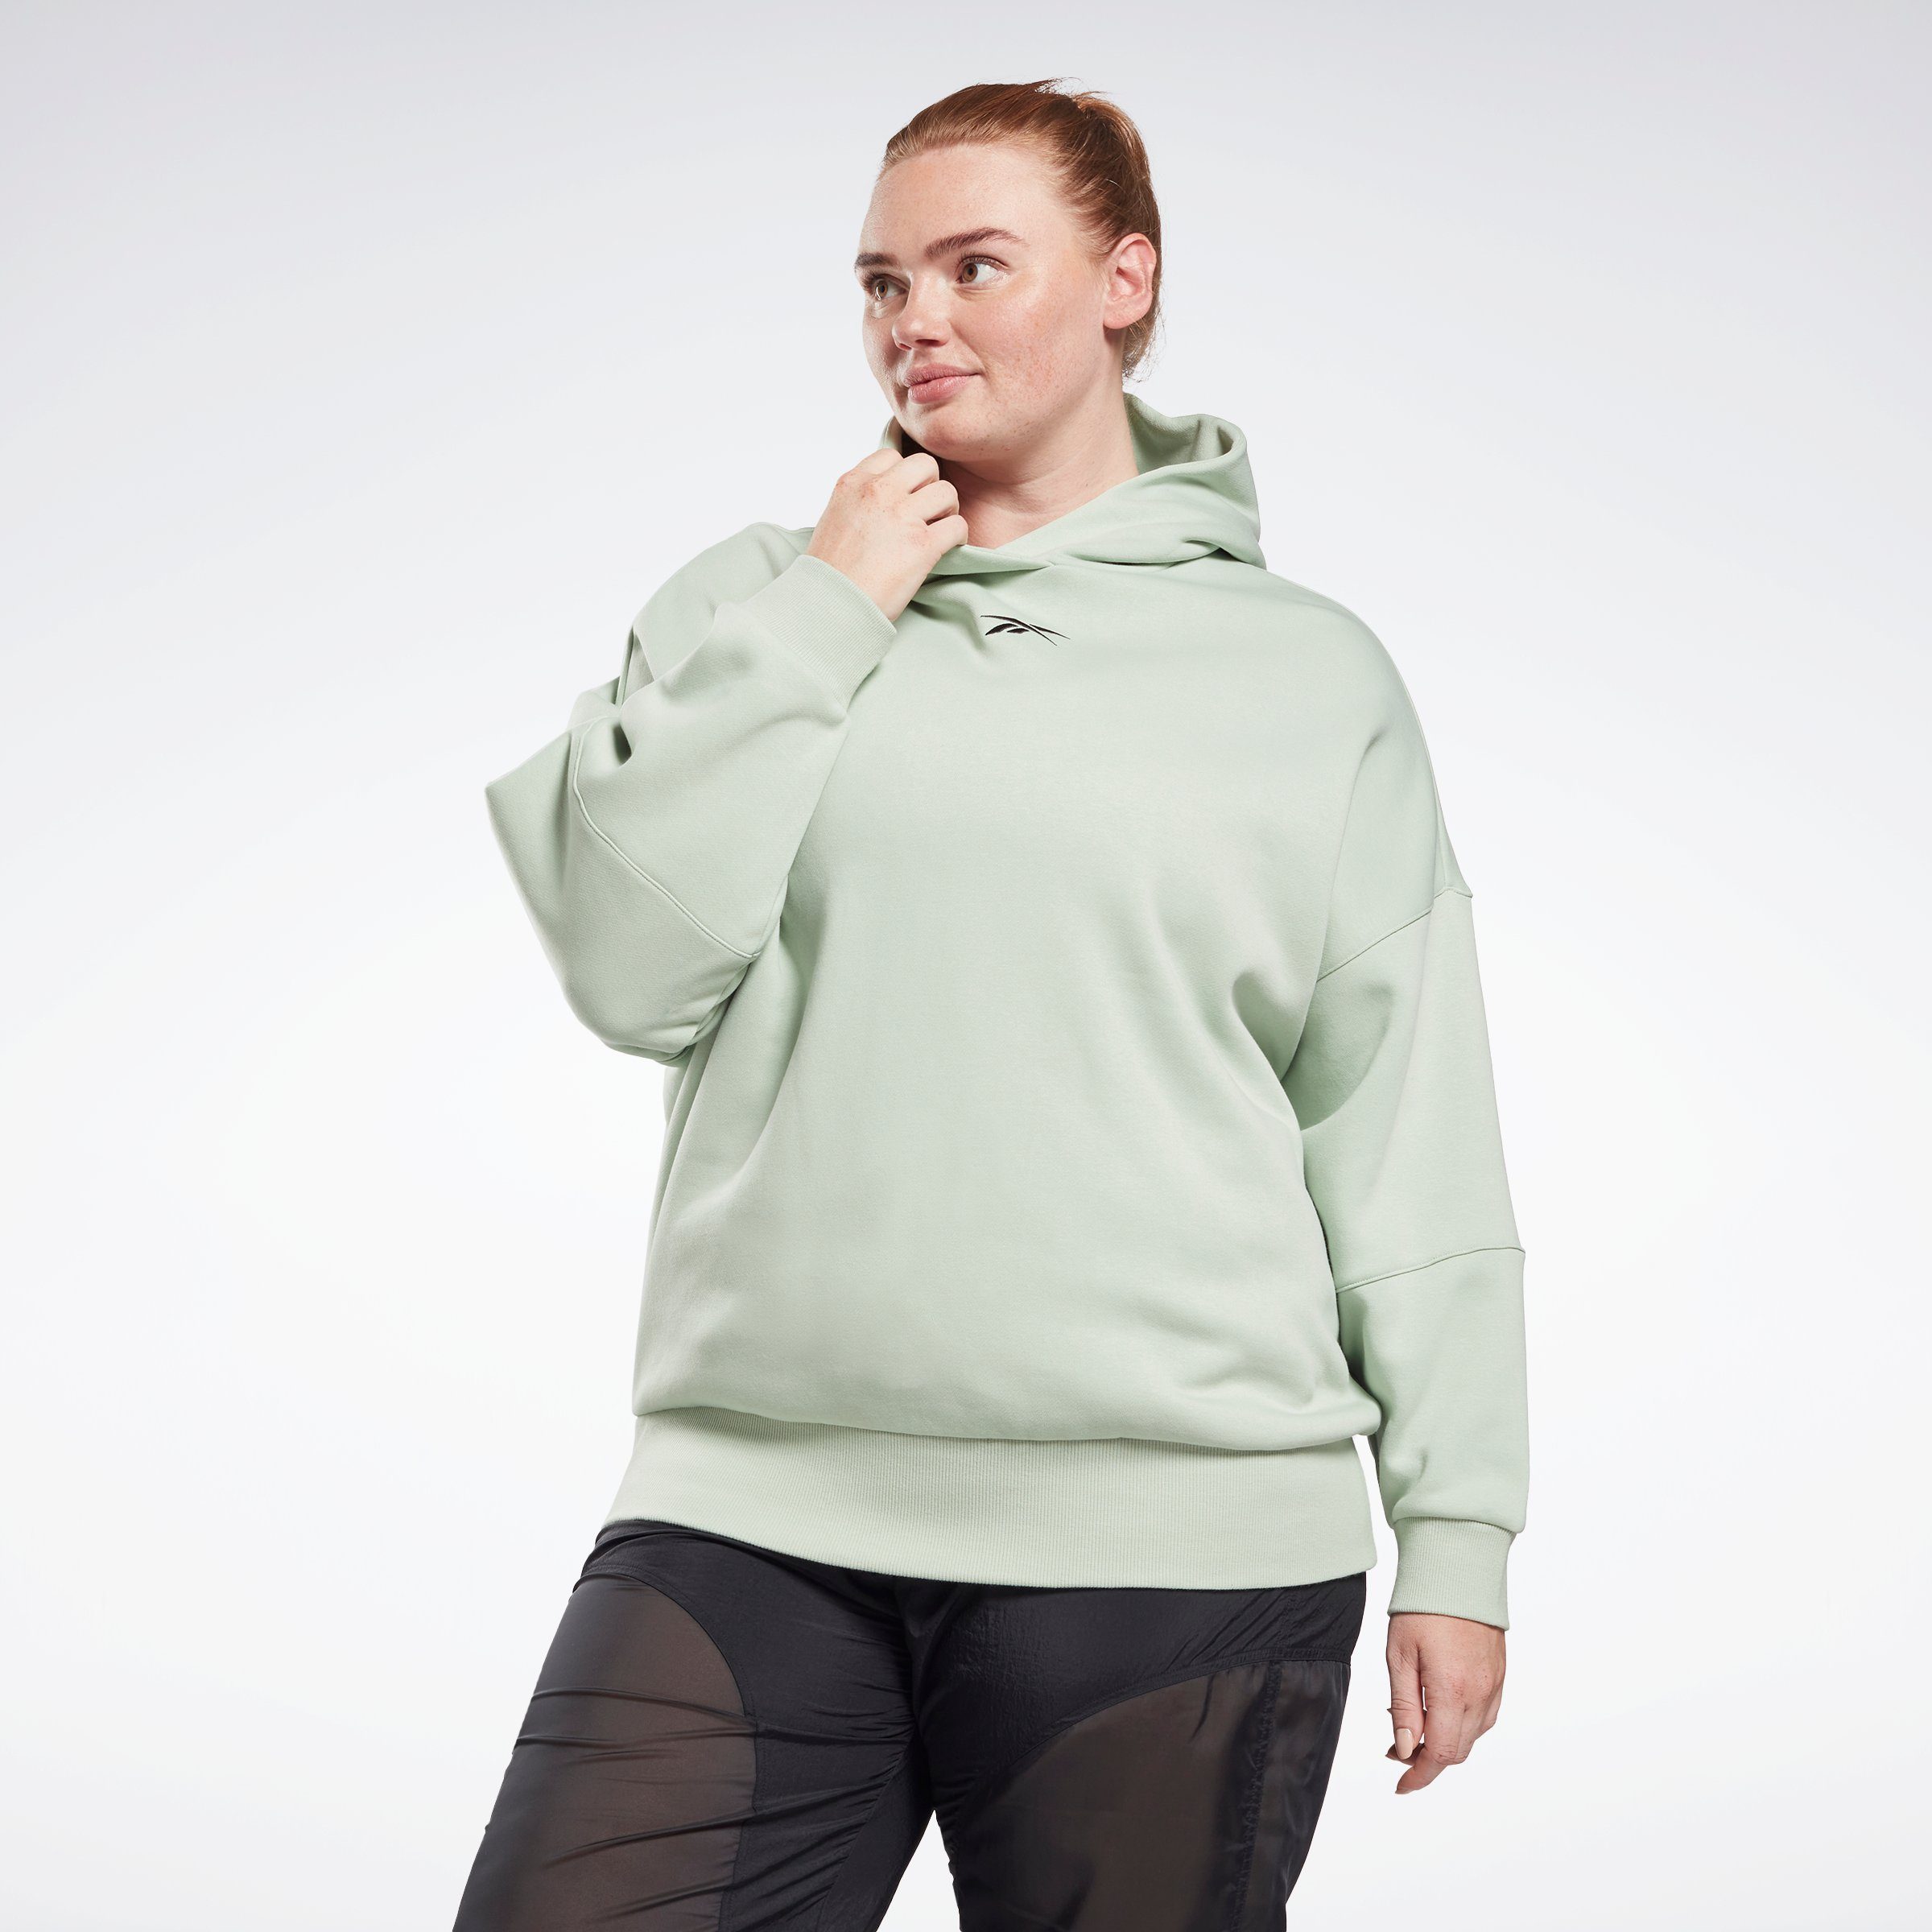 Reebok Damen Sweatshirts online kaufen | OTTO